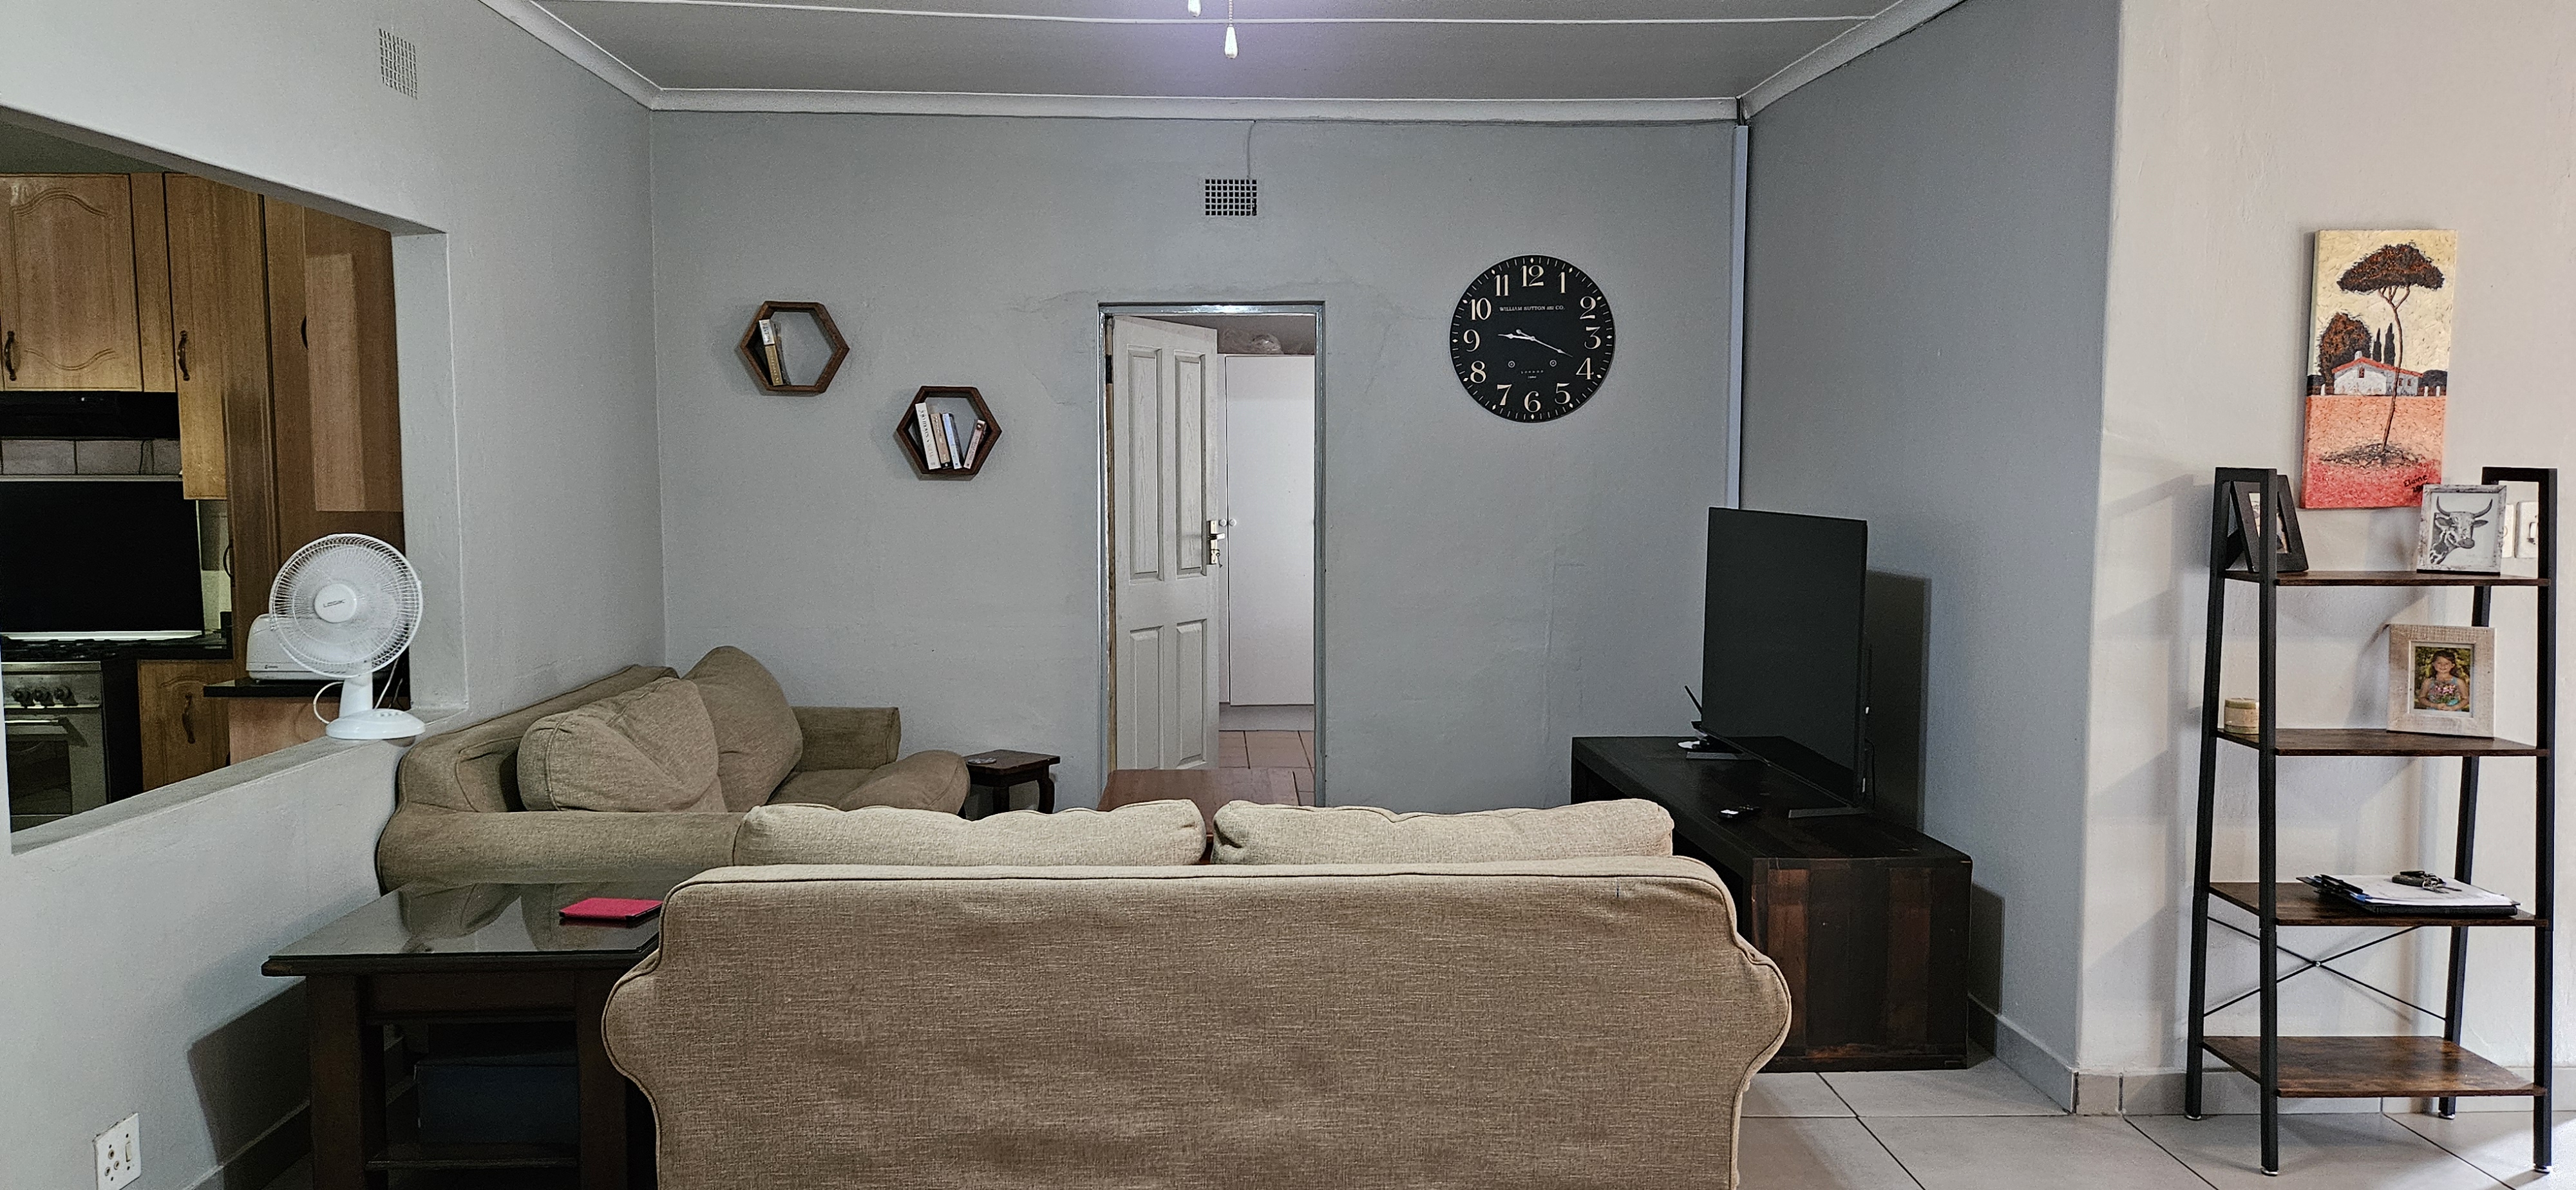 6 Bedroom Property for Sale in Bela Bela Limpopo